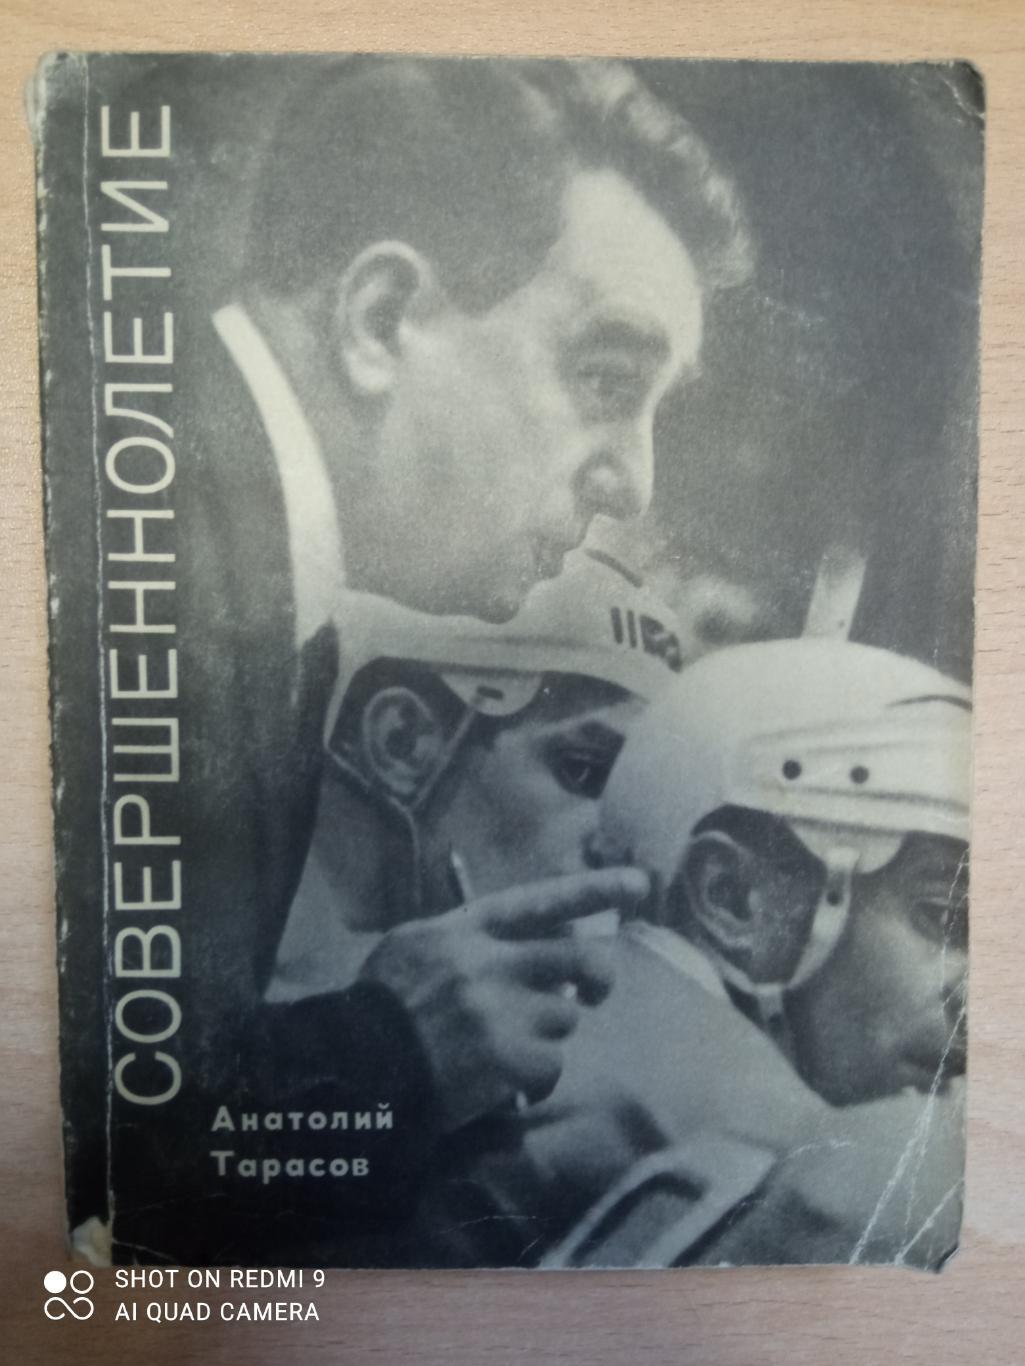 А. Тарасов. Совершеннолетие. Молодая гвардия, 1970. 352 стр. 3-е издание.